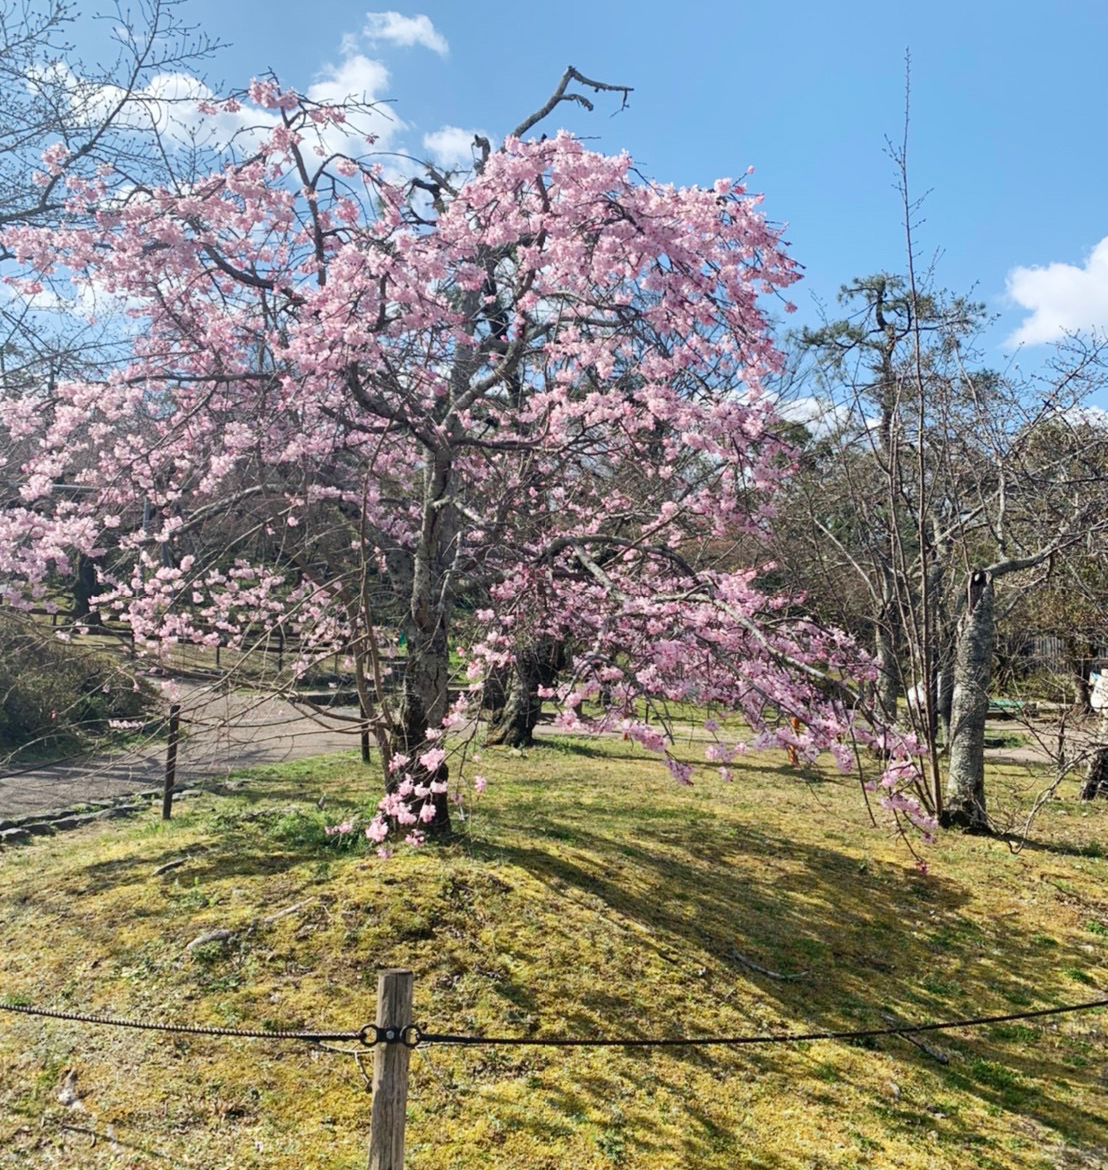 公園の中心部にある祇園枝垂桜は、正式名称「一重白彼岸枝垂桜」といいます。1代目桜は枯れてしまい、現在の桜は、庭師の佐野藤右衛門により植えられたもので、2代目です。